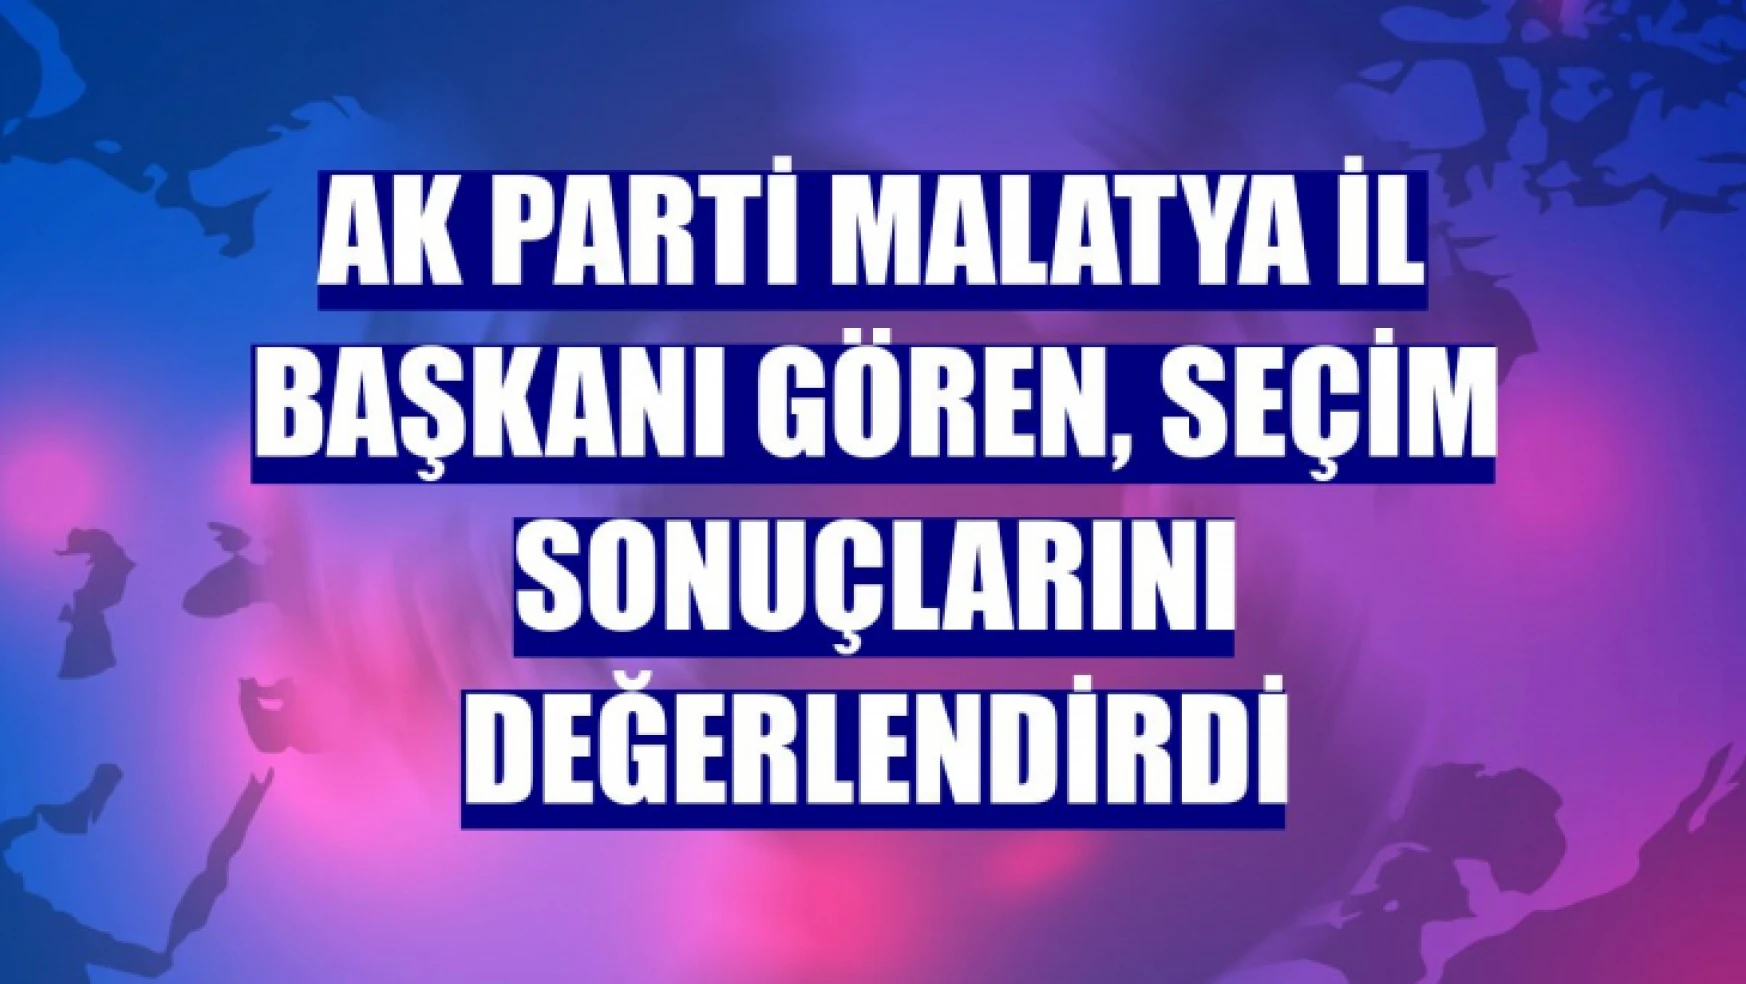 AK Parti Malatya İl Başkanı Gören, seçim sonuçlarını değerlendirdi